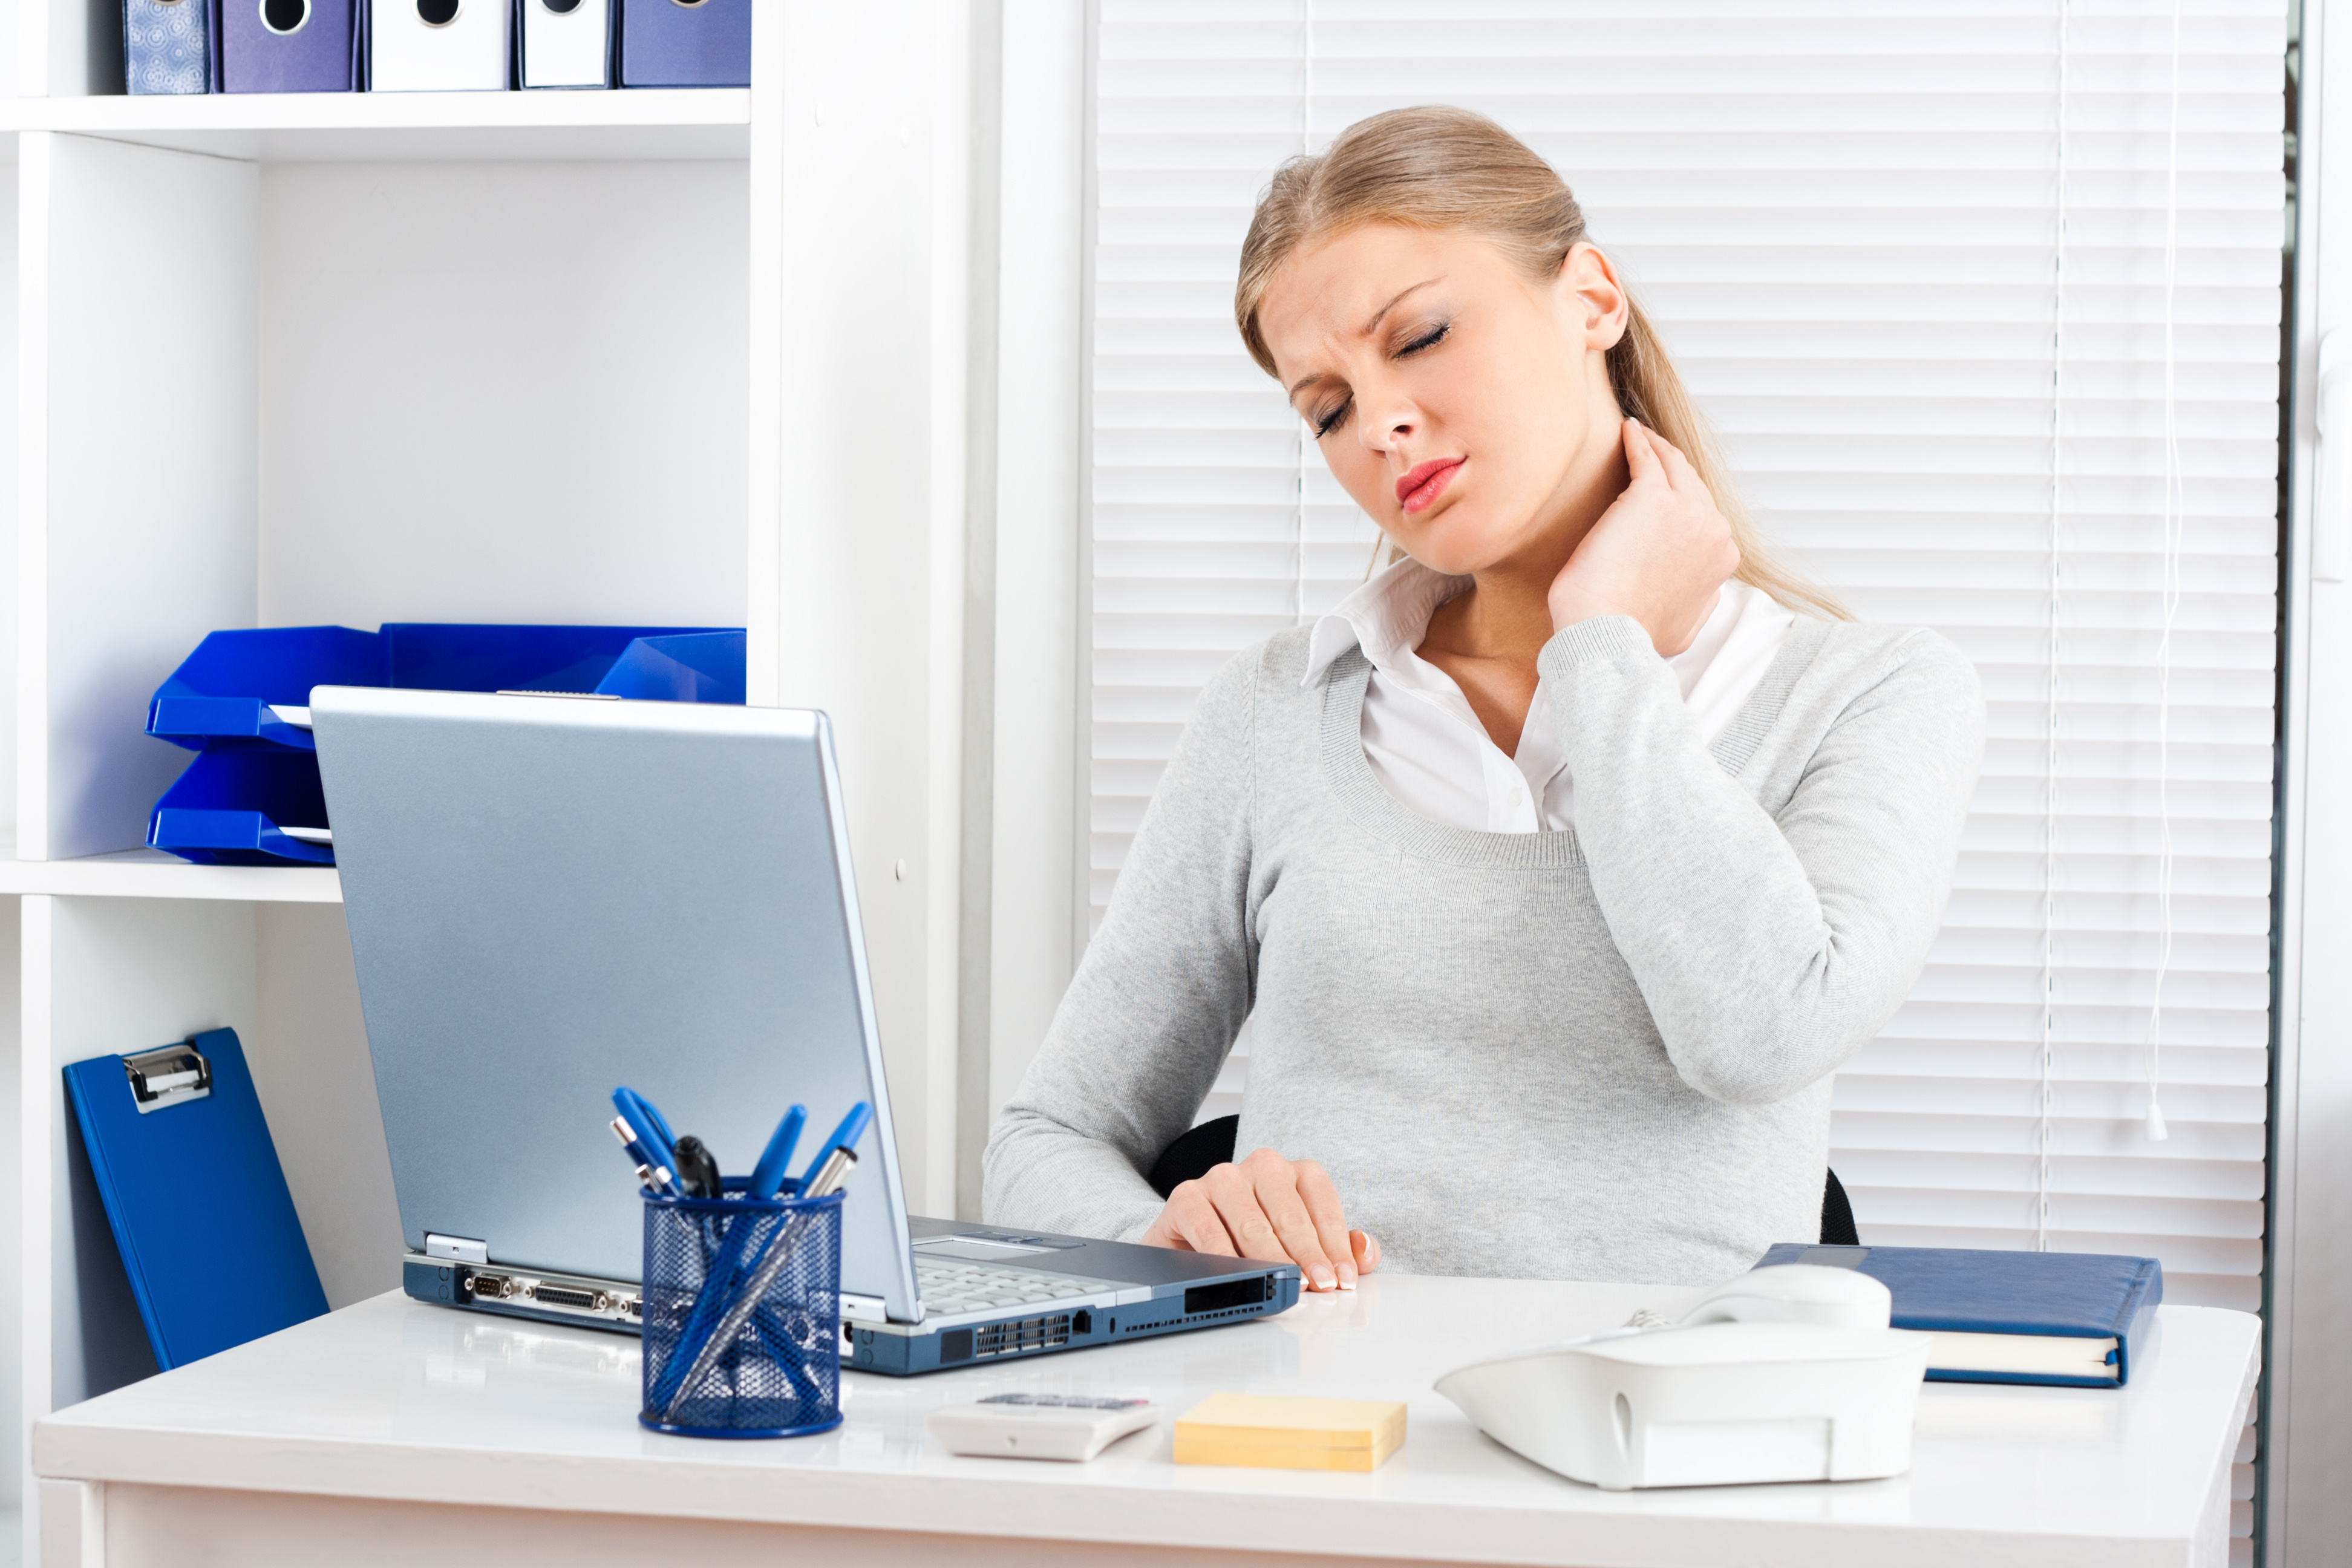 Усталость, стресс, сидячая работа — возможные причины для боли в шее и затылке